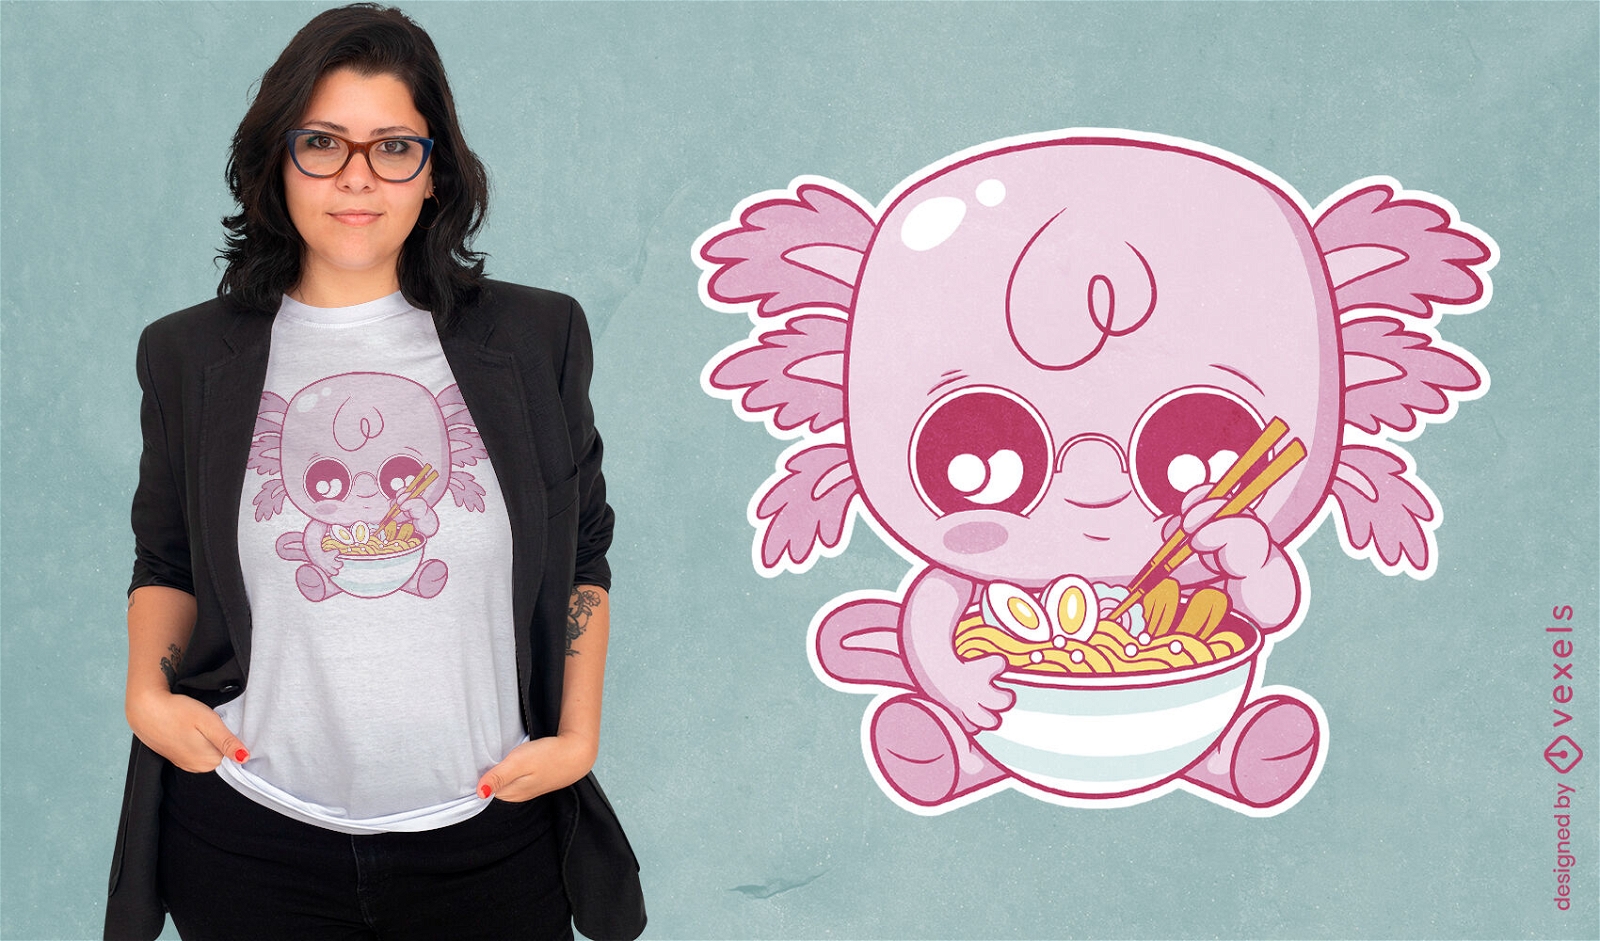 Adorable axolotl eating ramen t-shirt design